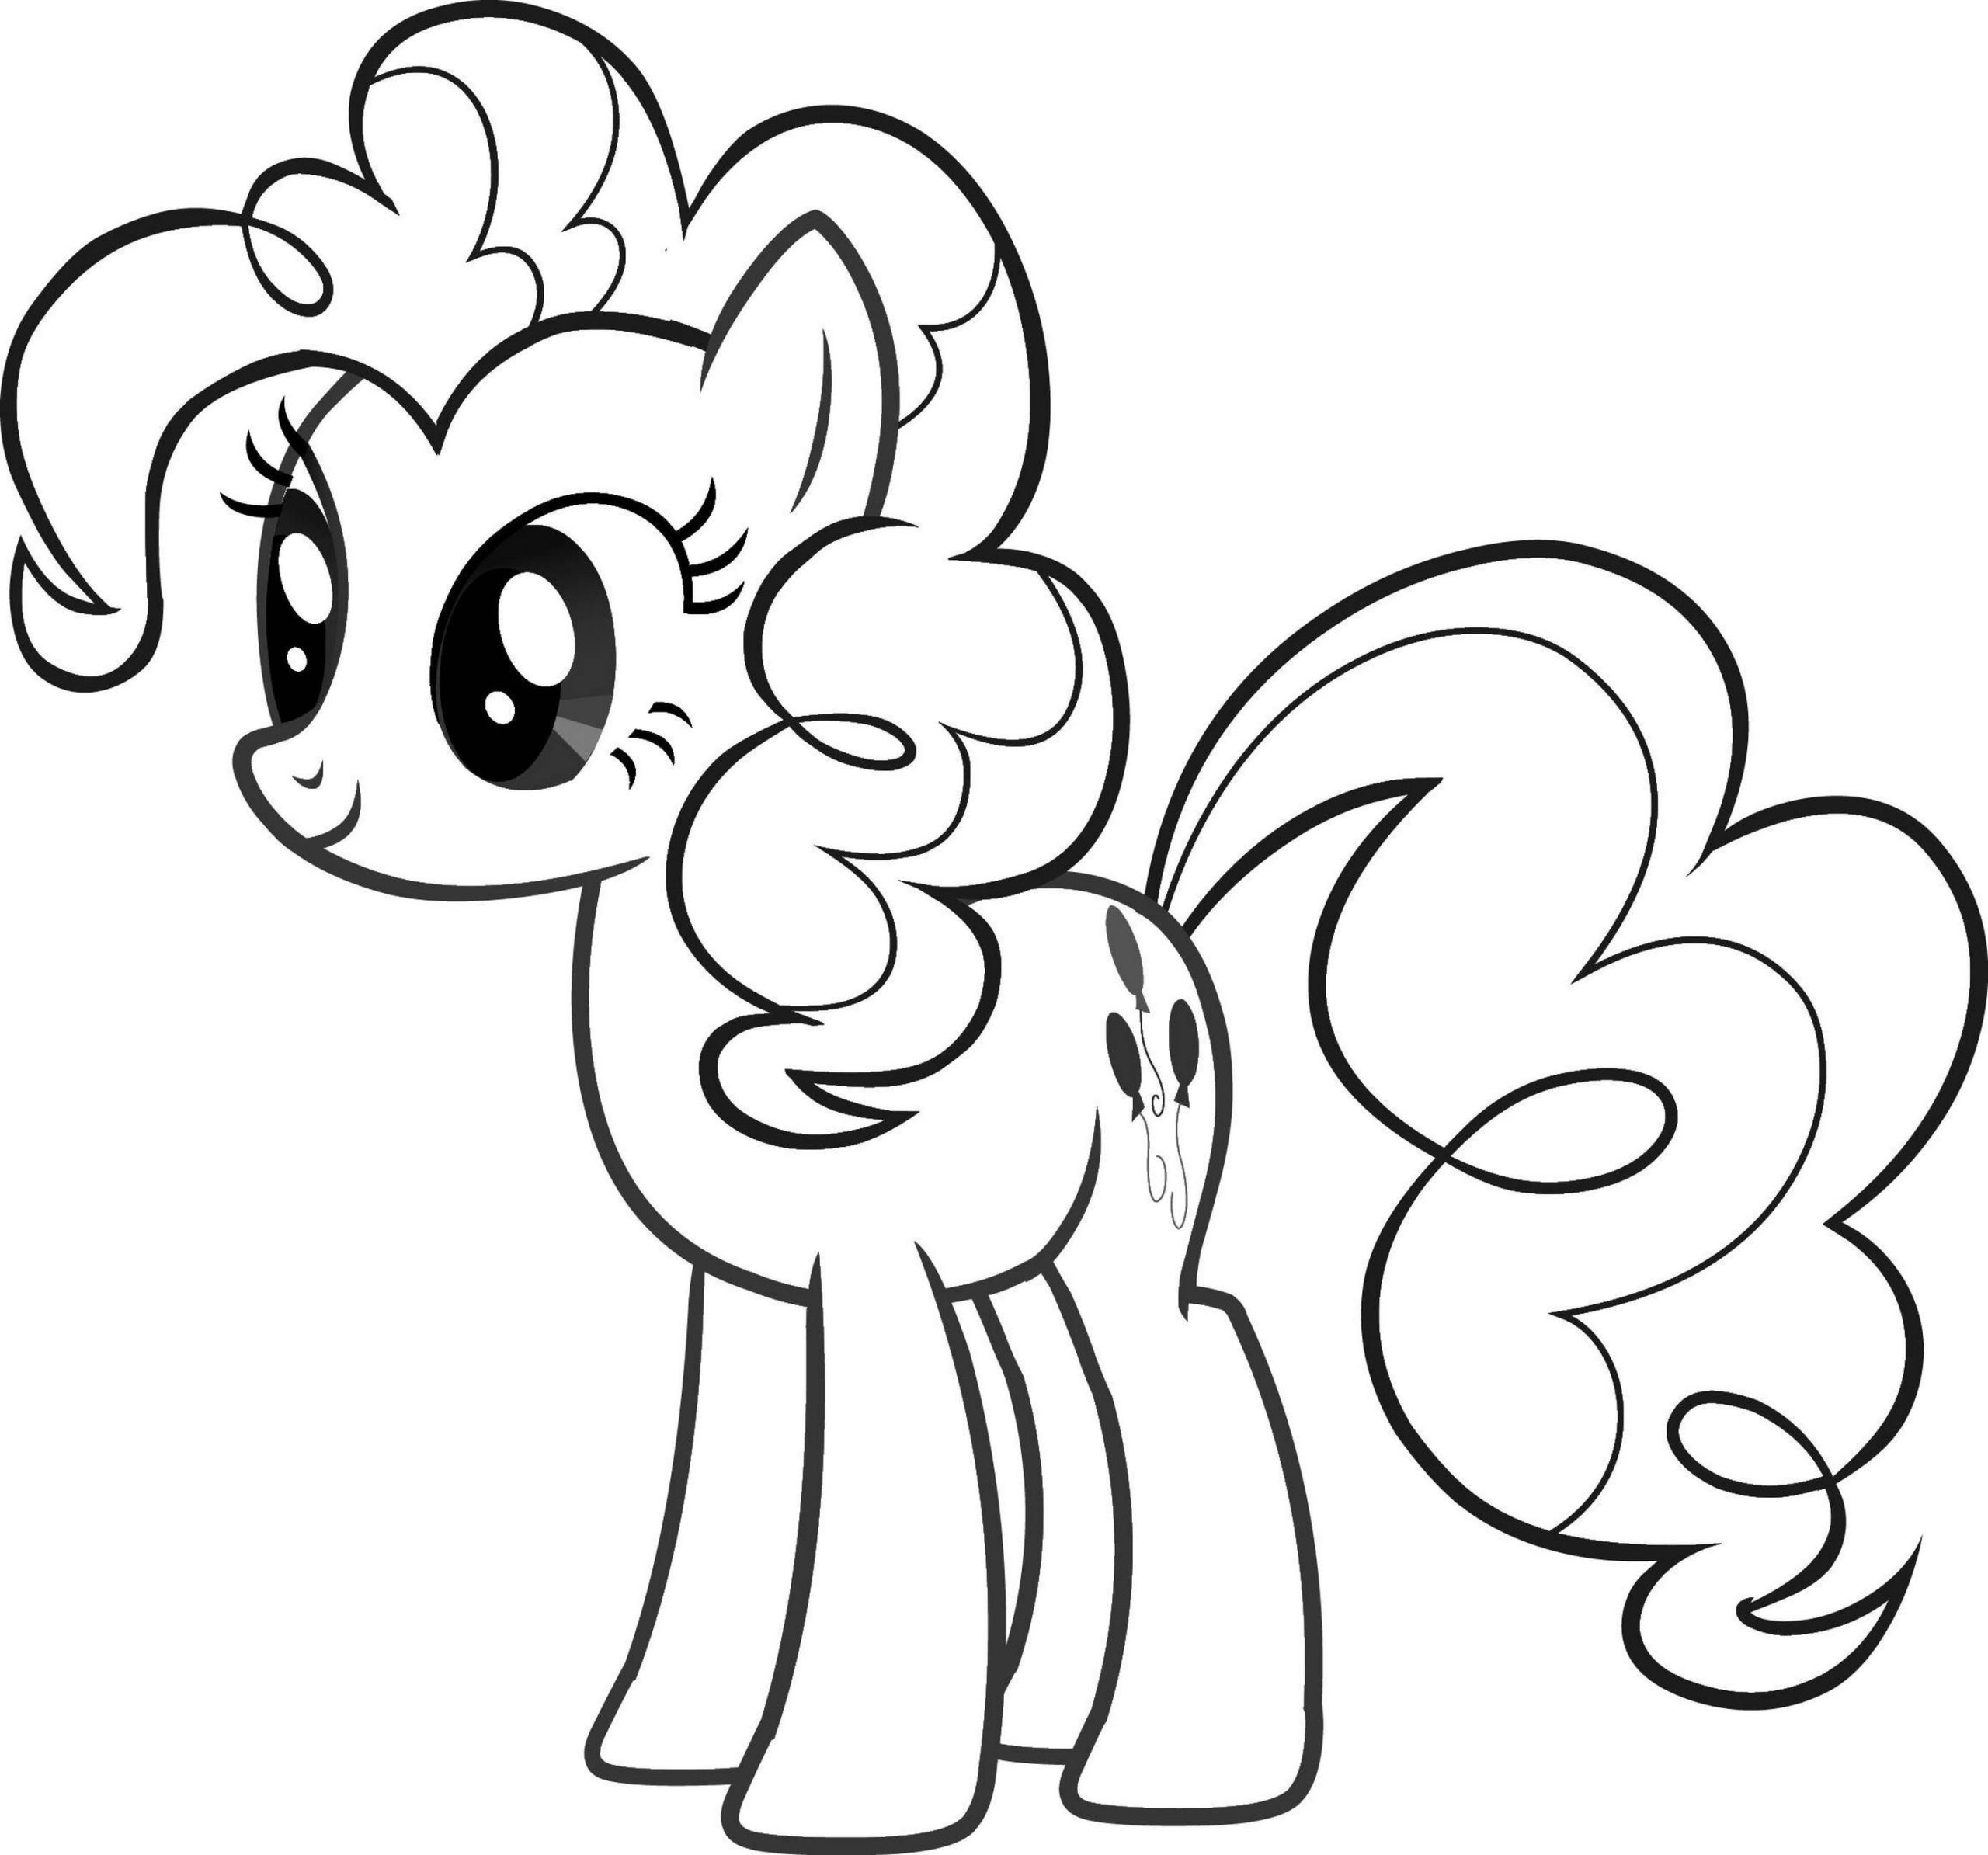 Tranh tô màu ngựa Pony đẹp và dễ thương nhất cho bé  Trường Tiểu học Thủ Lệ